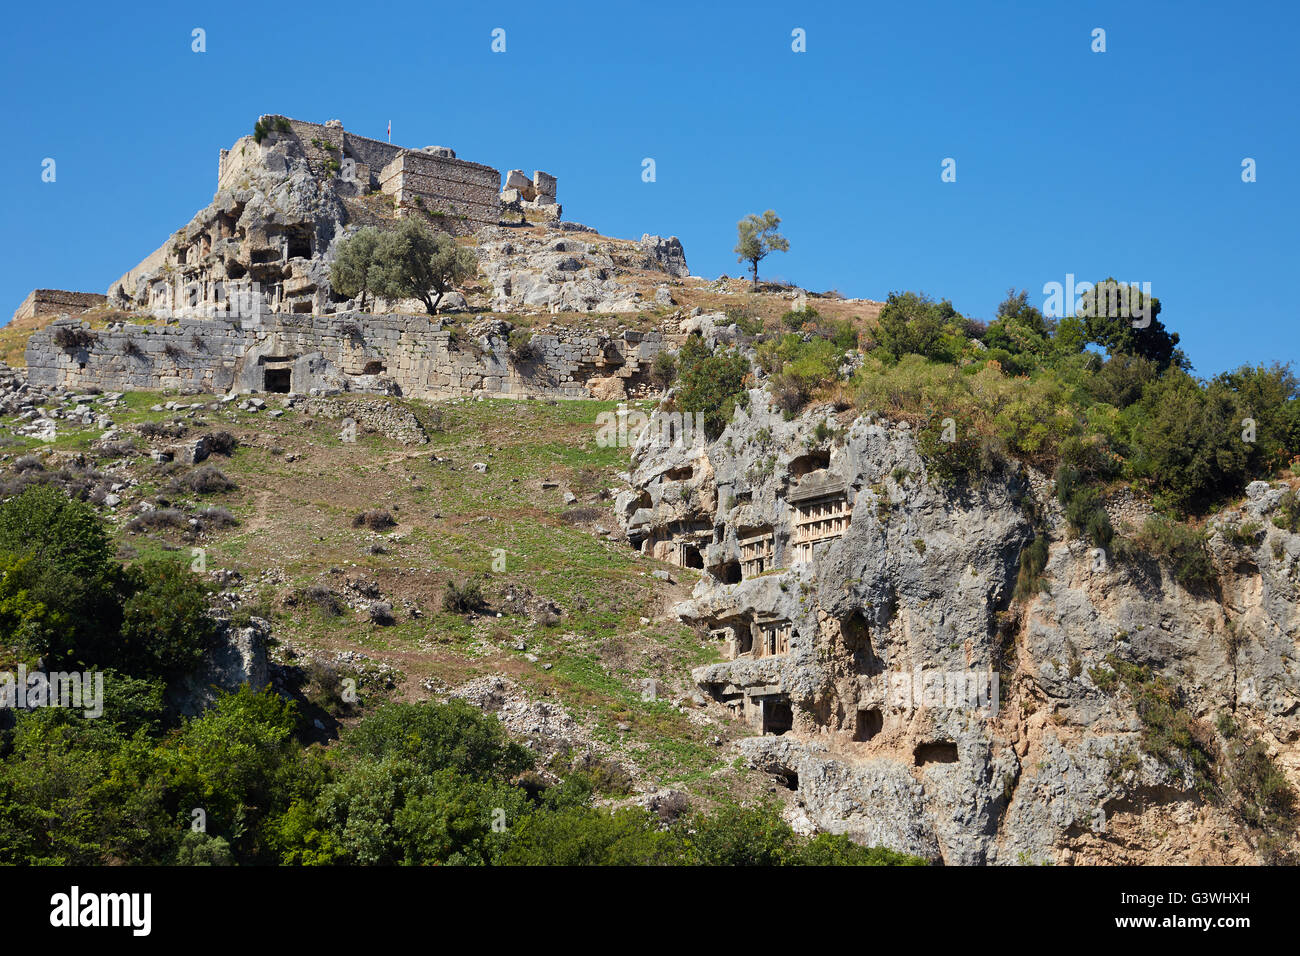 Lycian rock tombs at the Ancient city Tlos, Lycia, Turkey. Stock Photo